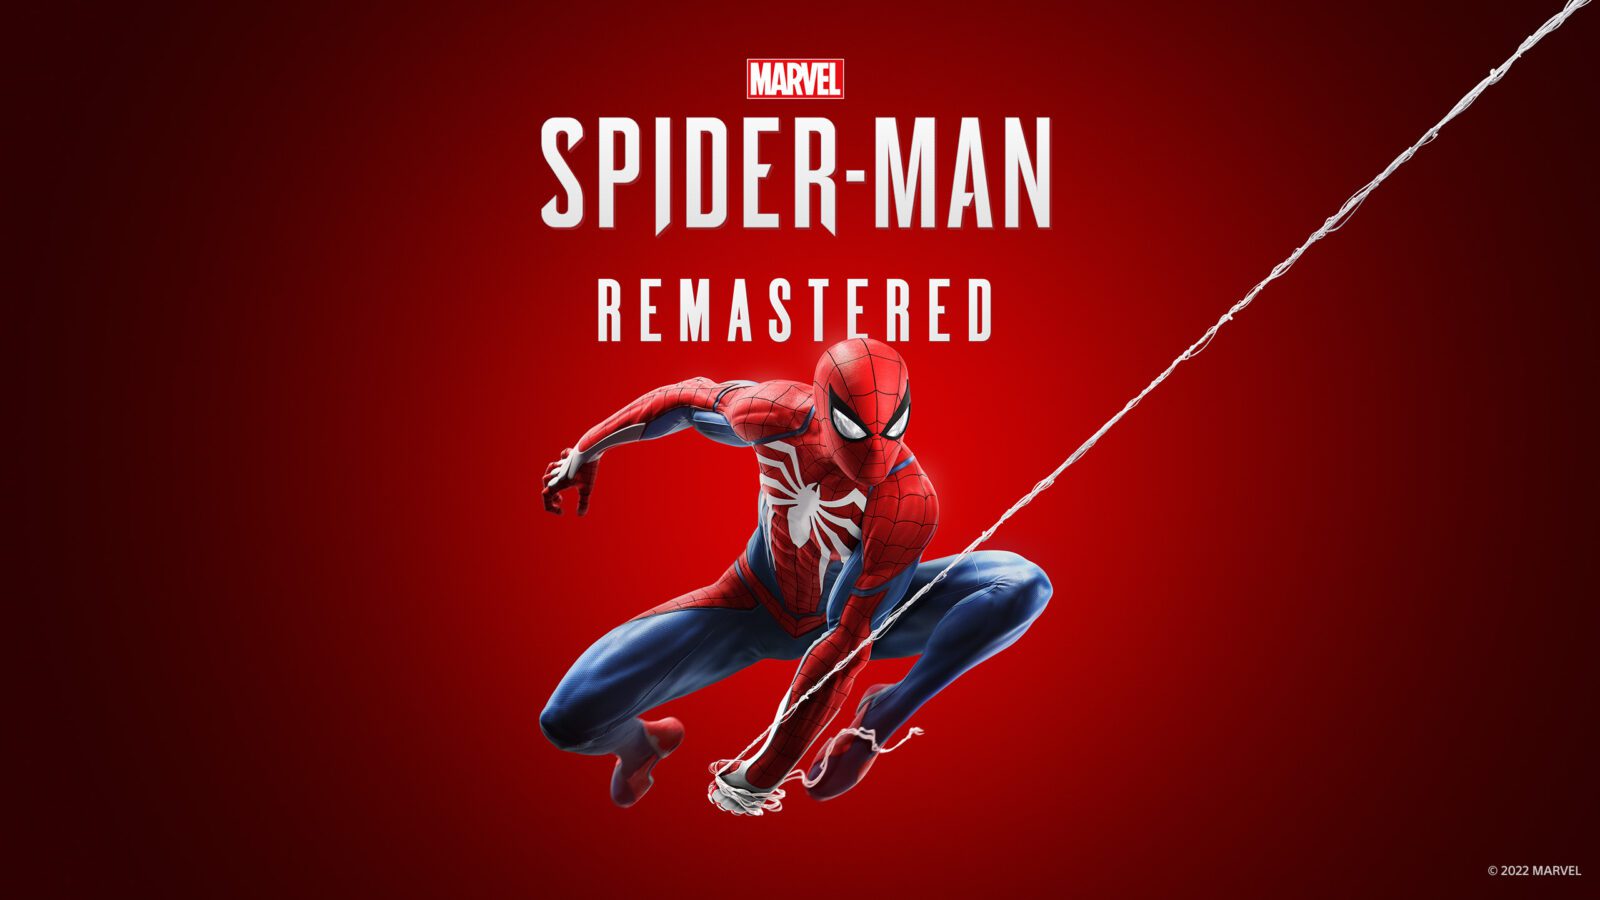 Spider-man Remastered imagem promocional